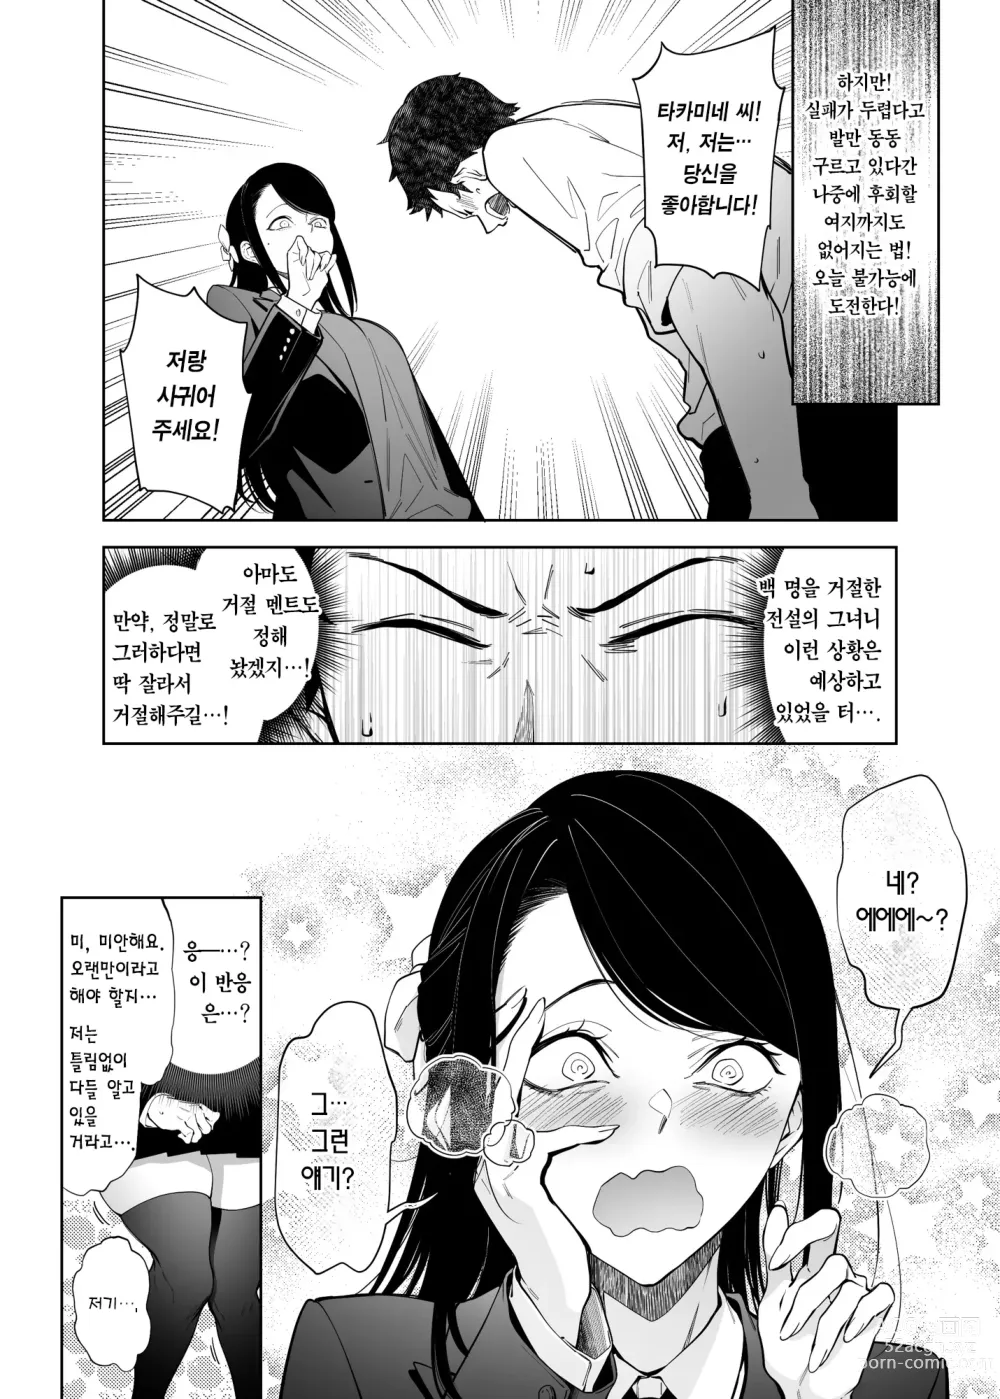 Page 5 of doujinshi 절벽 위의 꽃에게 하는 고백 성공률은 제로인 이유